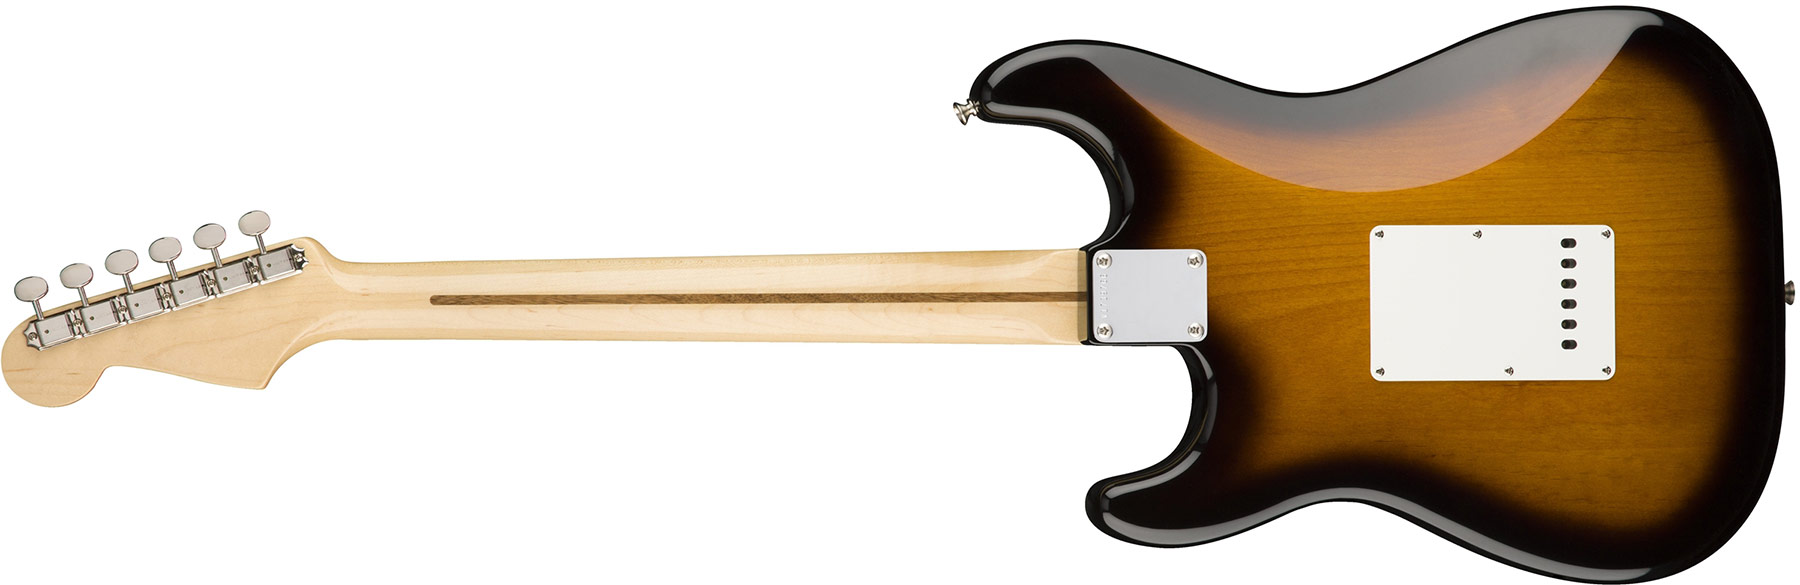 Fender Strat '50s American Original Usa Sss Mn - 2-color Sunburst - Str shape electric guitar - Variation 3